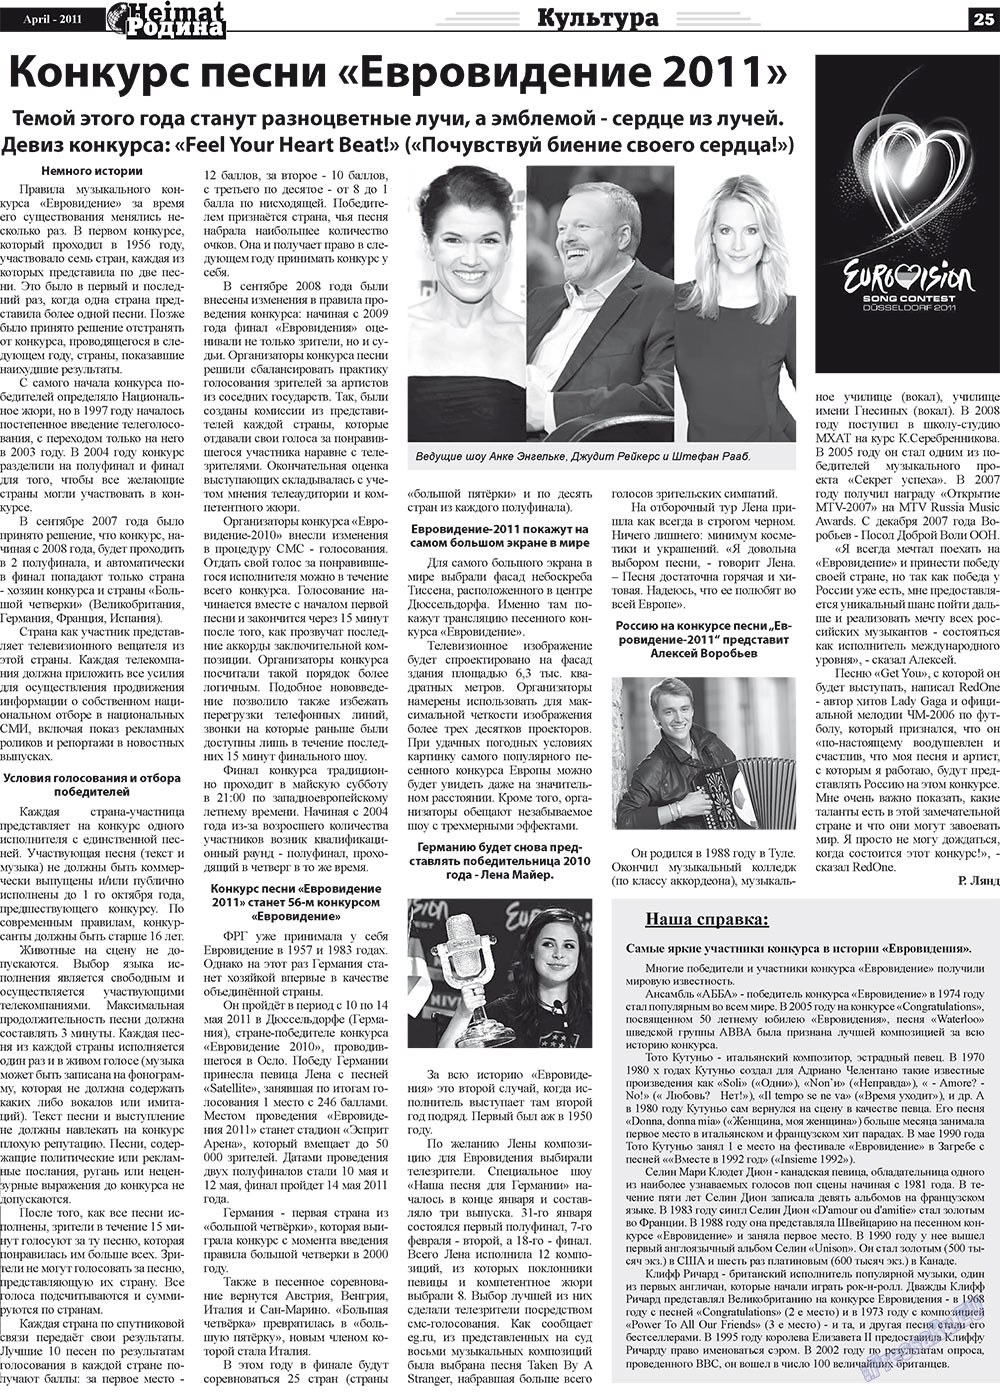 Heimat-Родина (газета). 2011 год, номер 4, стр. 25